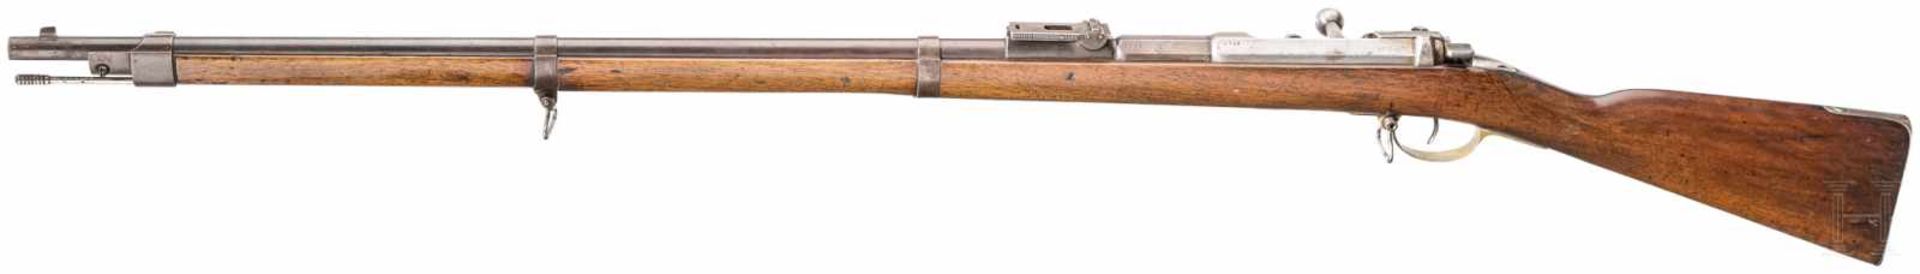 Gewehr 71, Erfurt, 1874 - Bild 2 aus 2